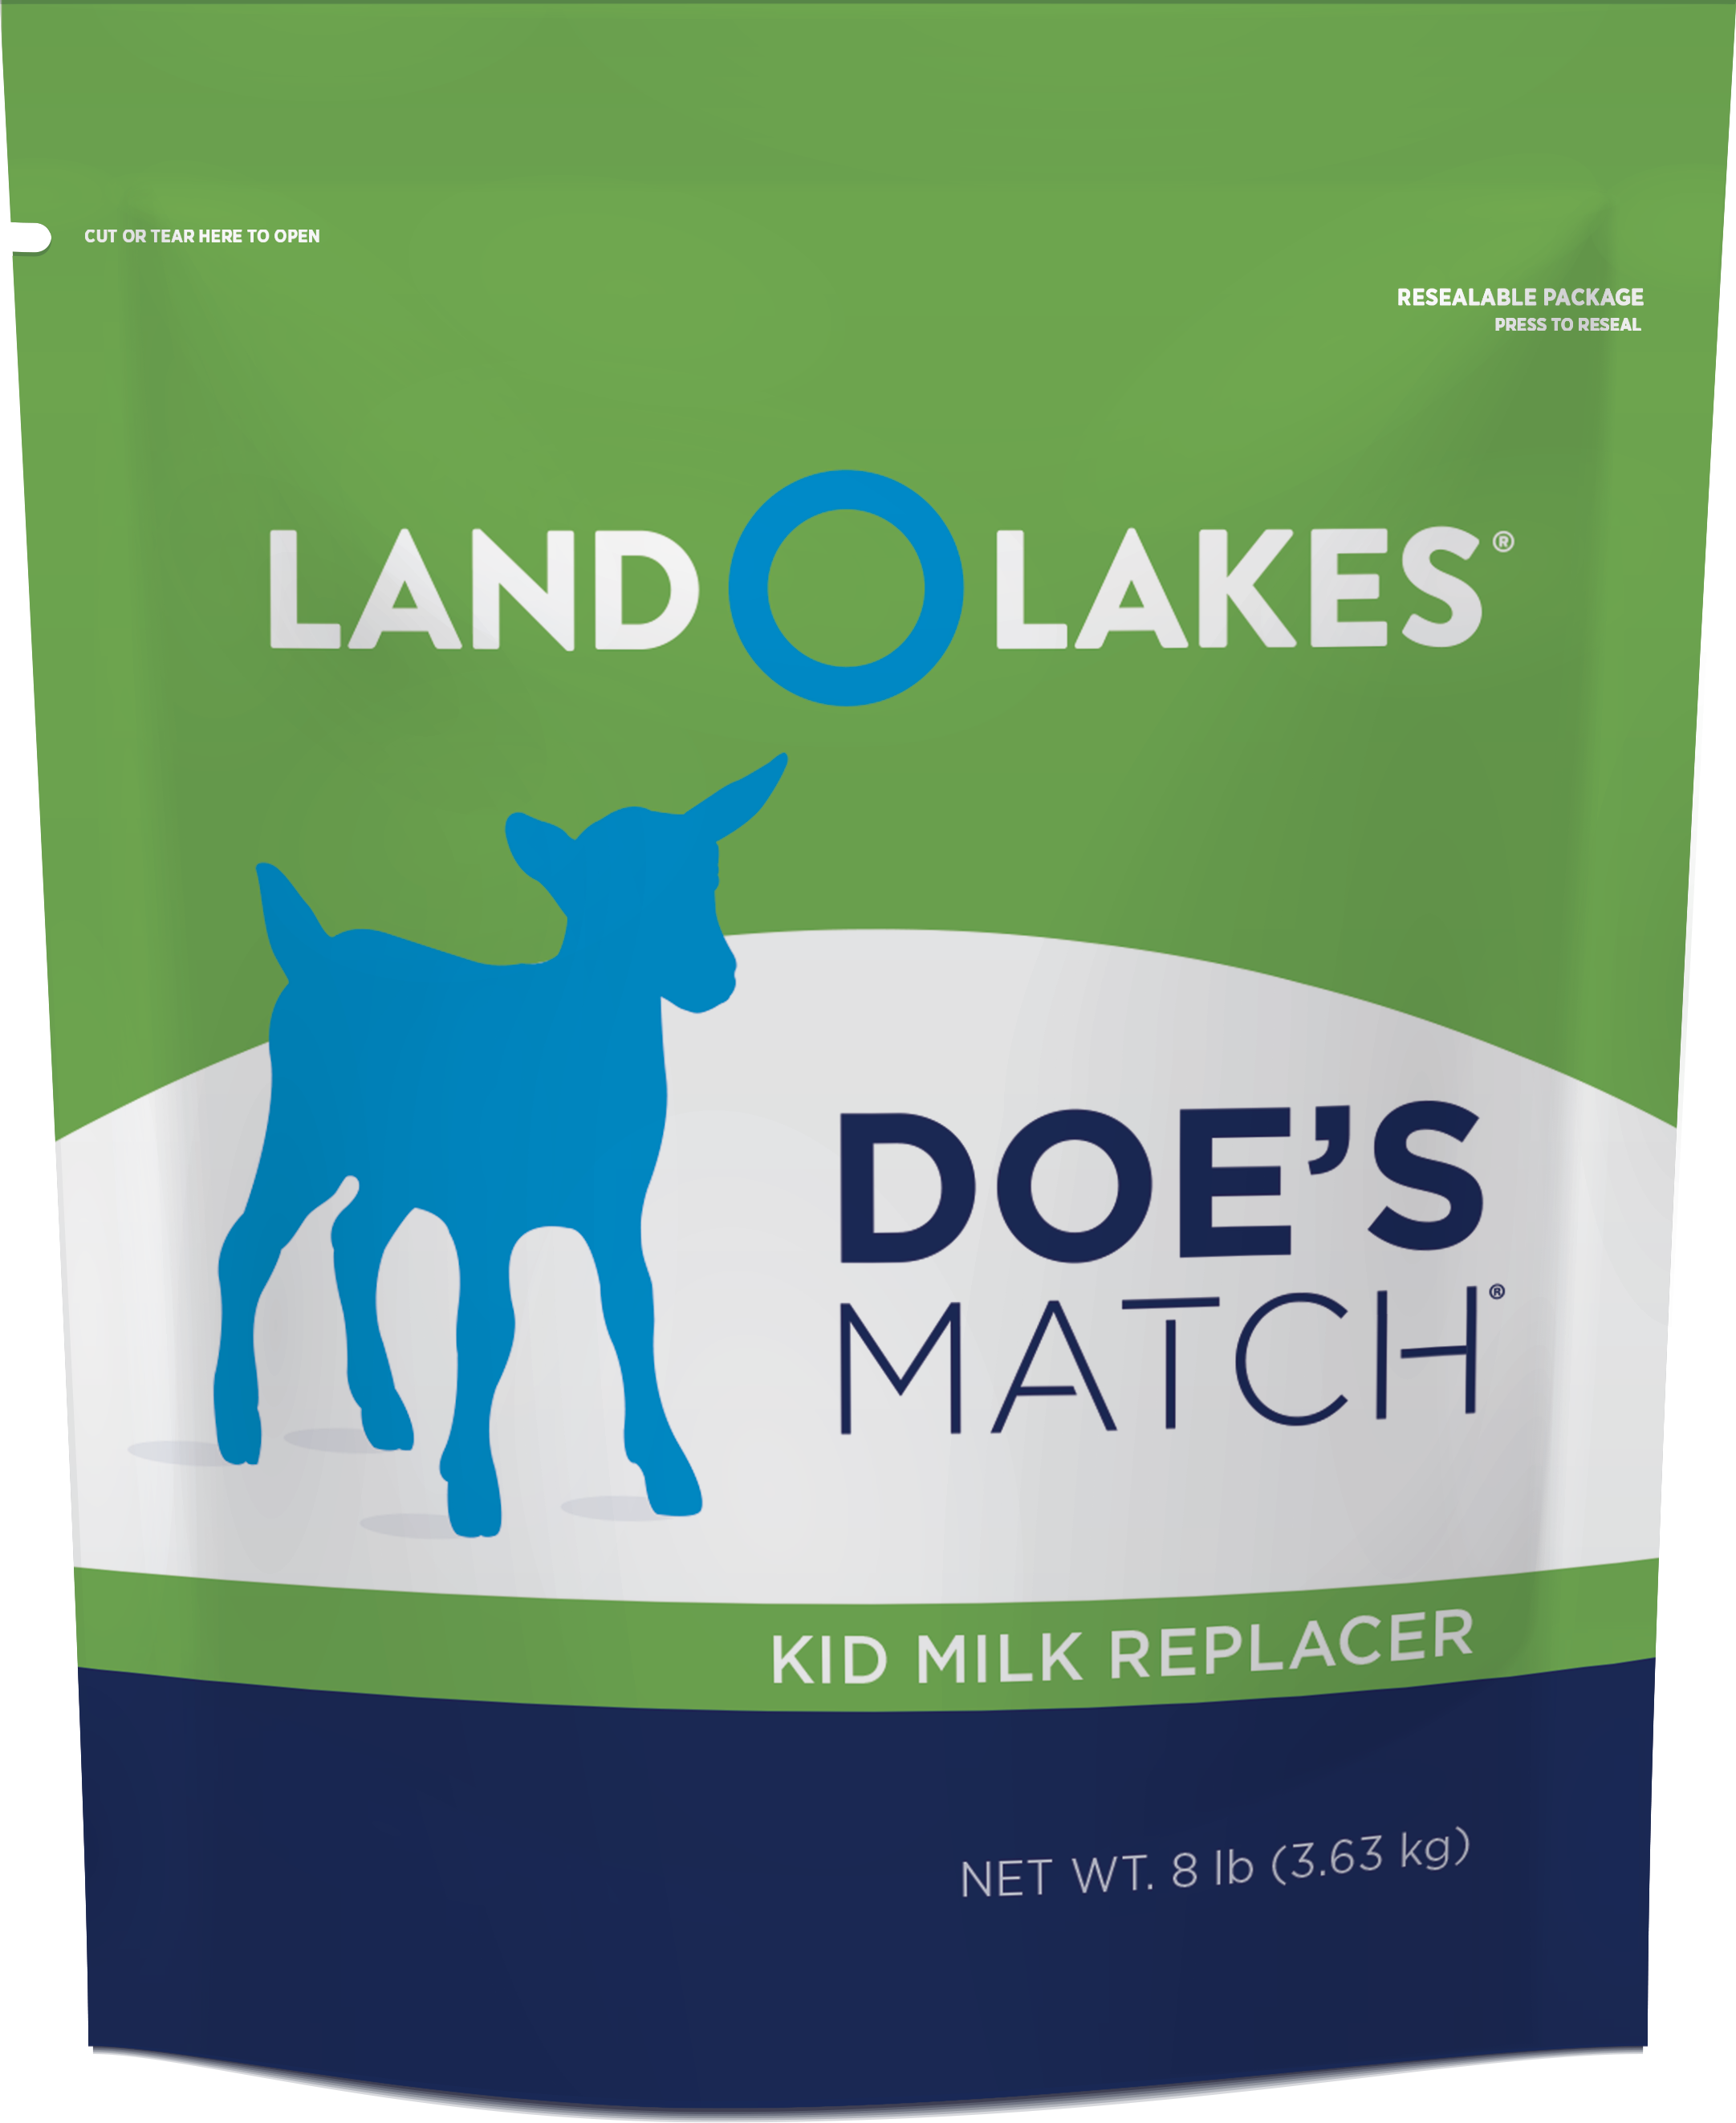 Land o' Lakes Doe's Match Kid Milk Replacer, 8 lb.